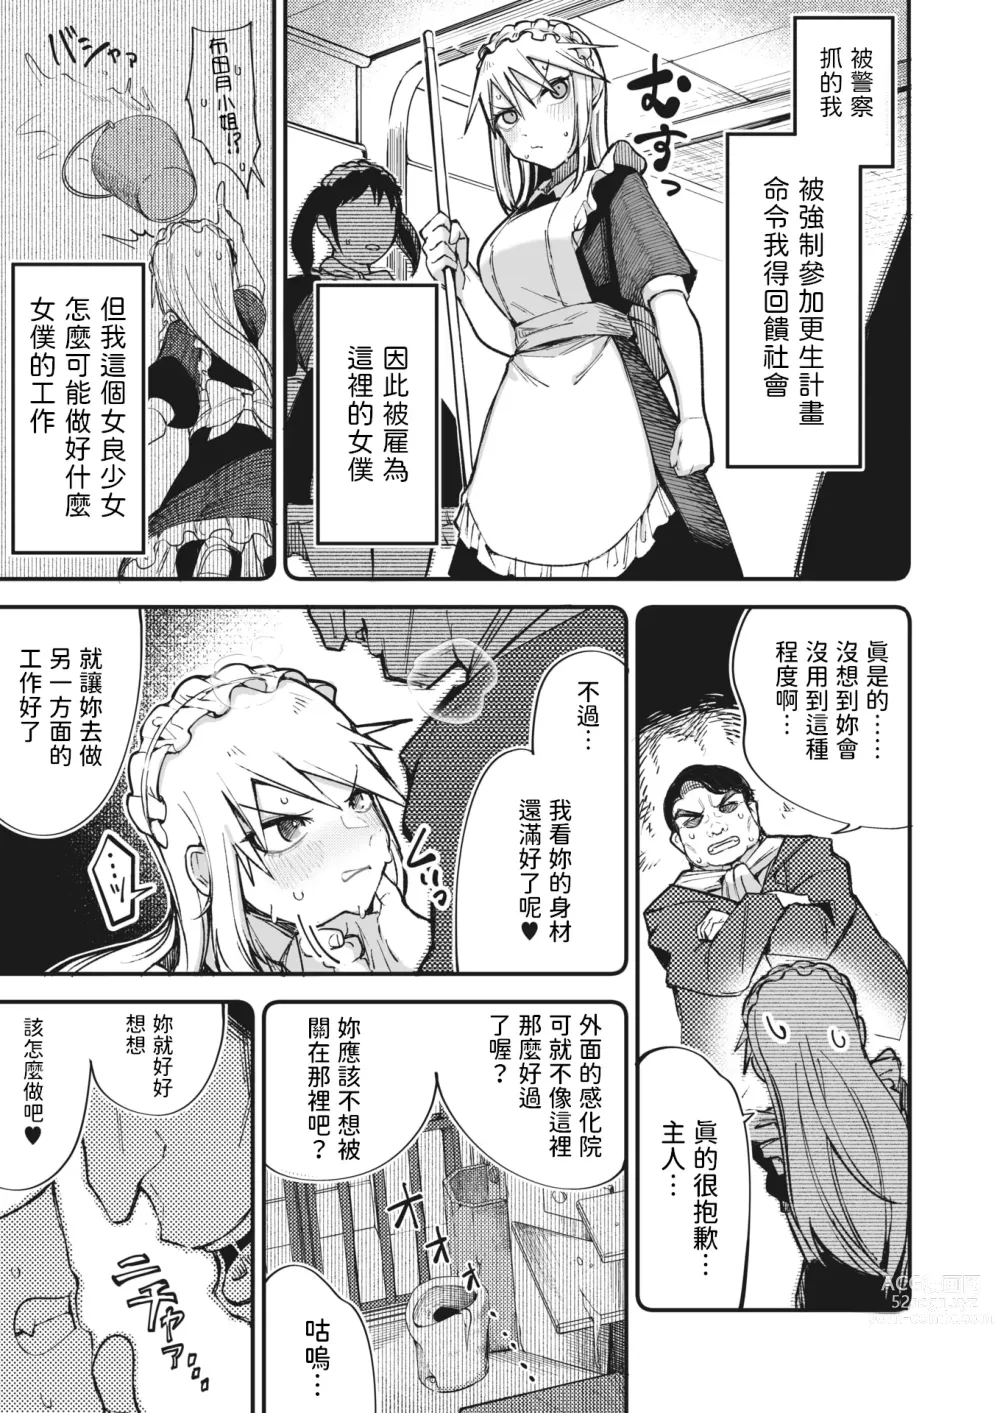 Page 3 of manga Furyou Shoujo,   Kousei shimasu... ka!?